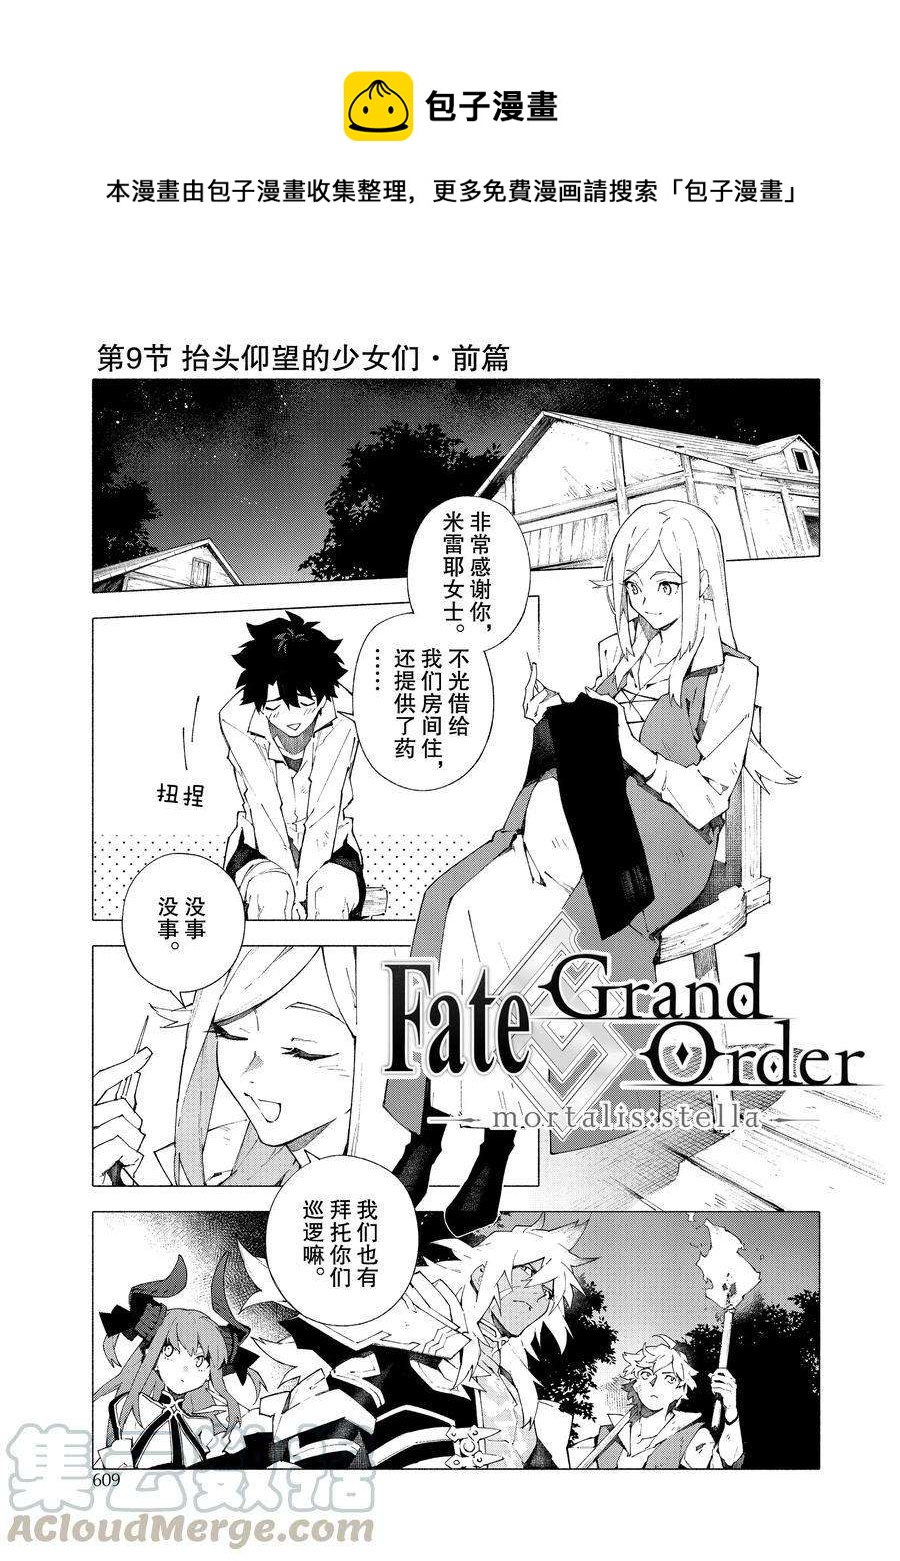 Fate Grand Order-mortalis:stella - 第13话 - 1